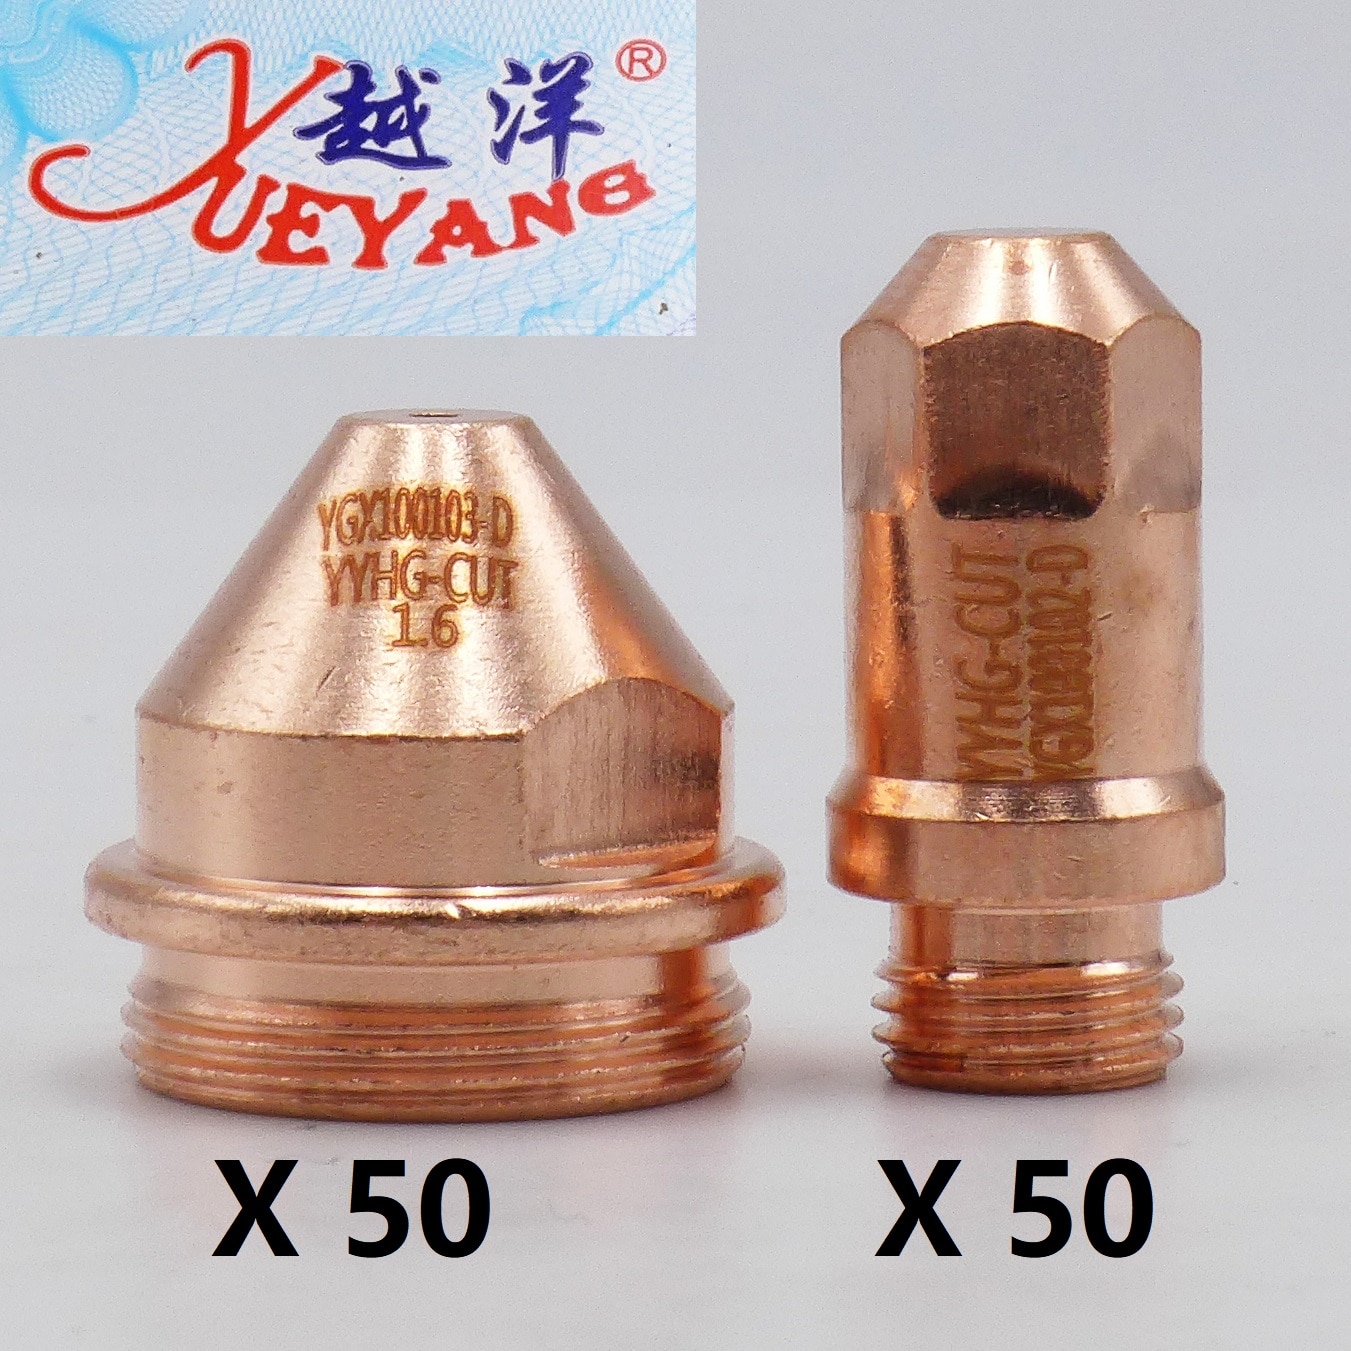 Yueyang 50  + 1.2 1.6 1.8  50 YGX-100 YK-100 YK-10..